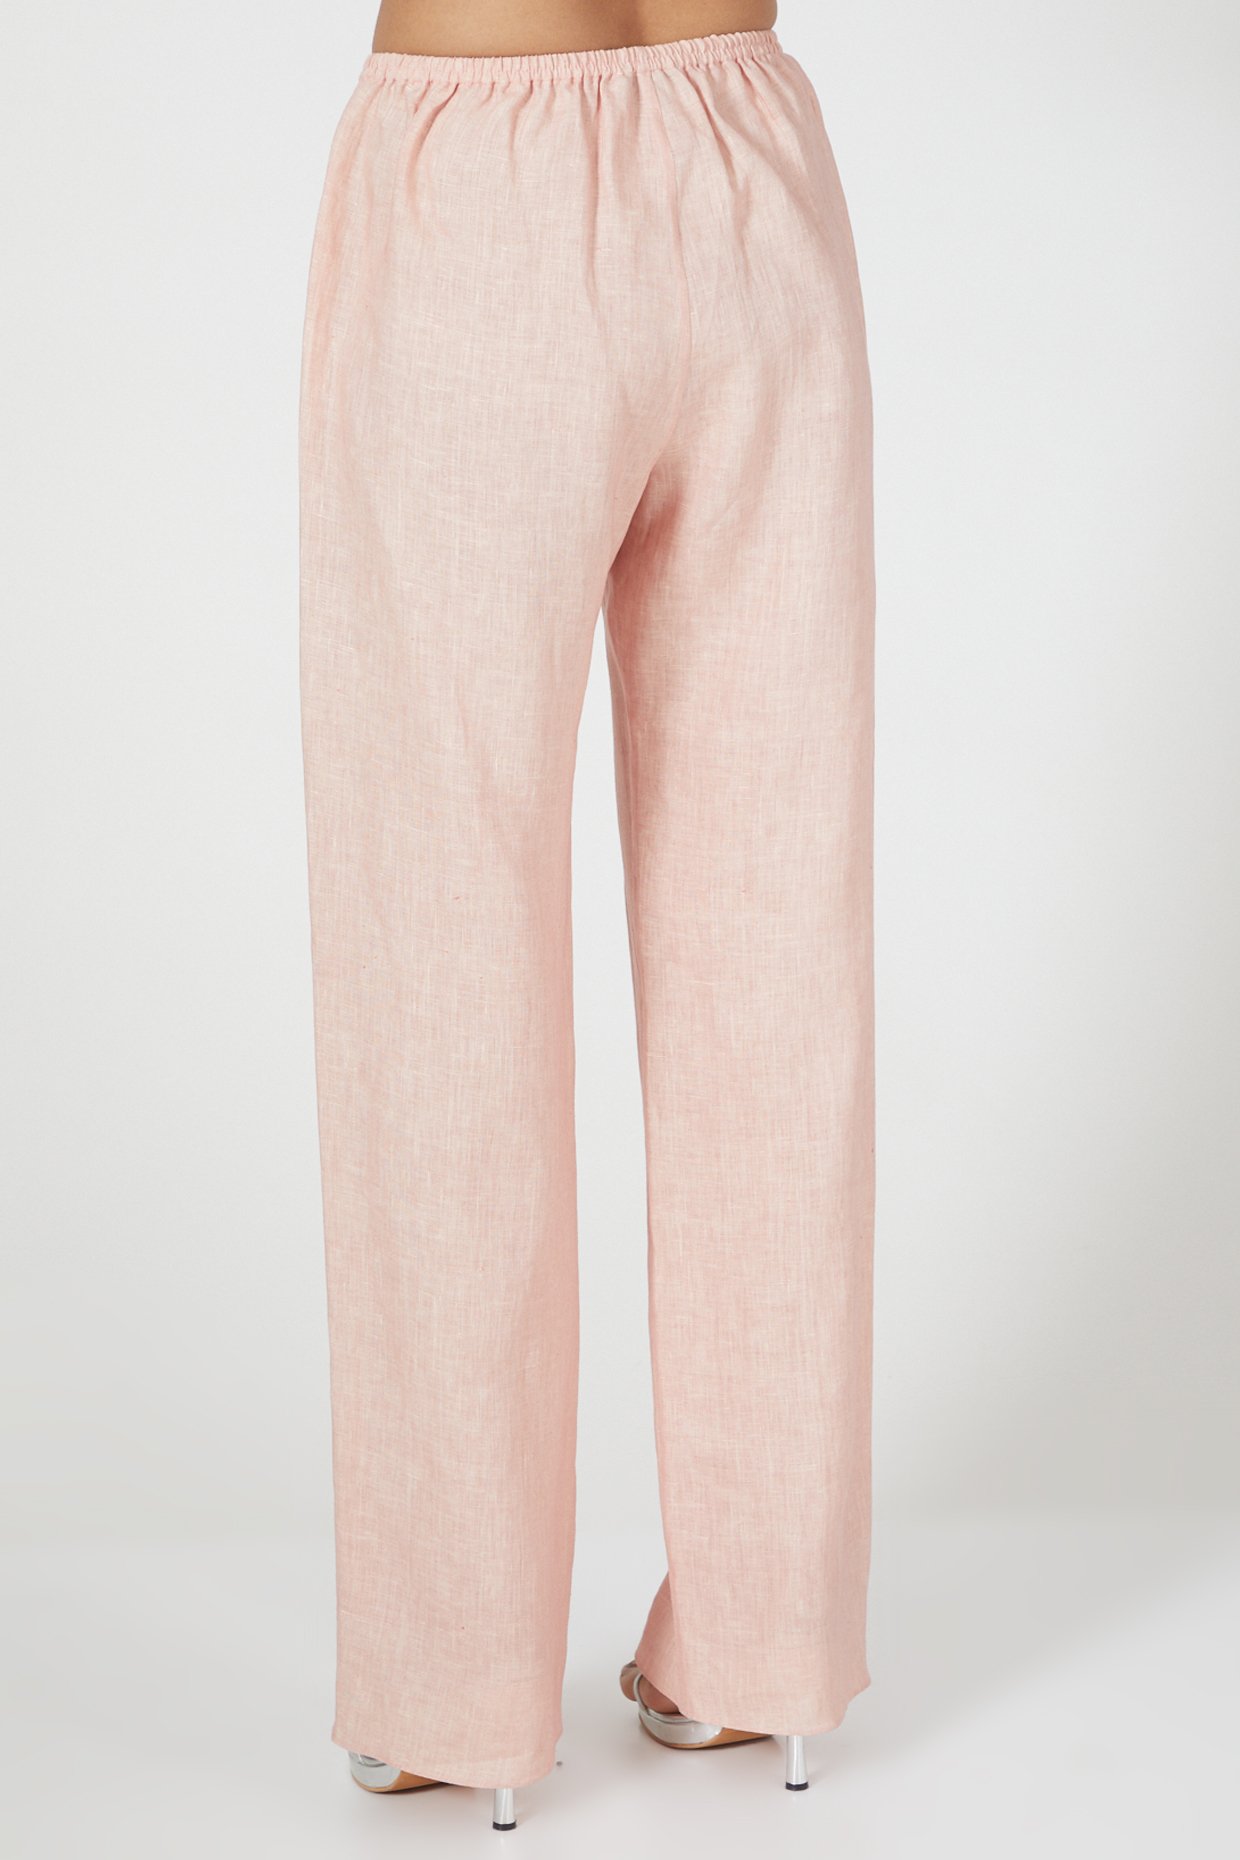 H&H Women's Linen Blend Wide Leg Pants Pink Light | The Warehouse